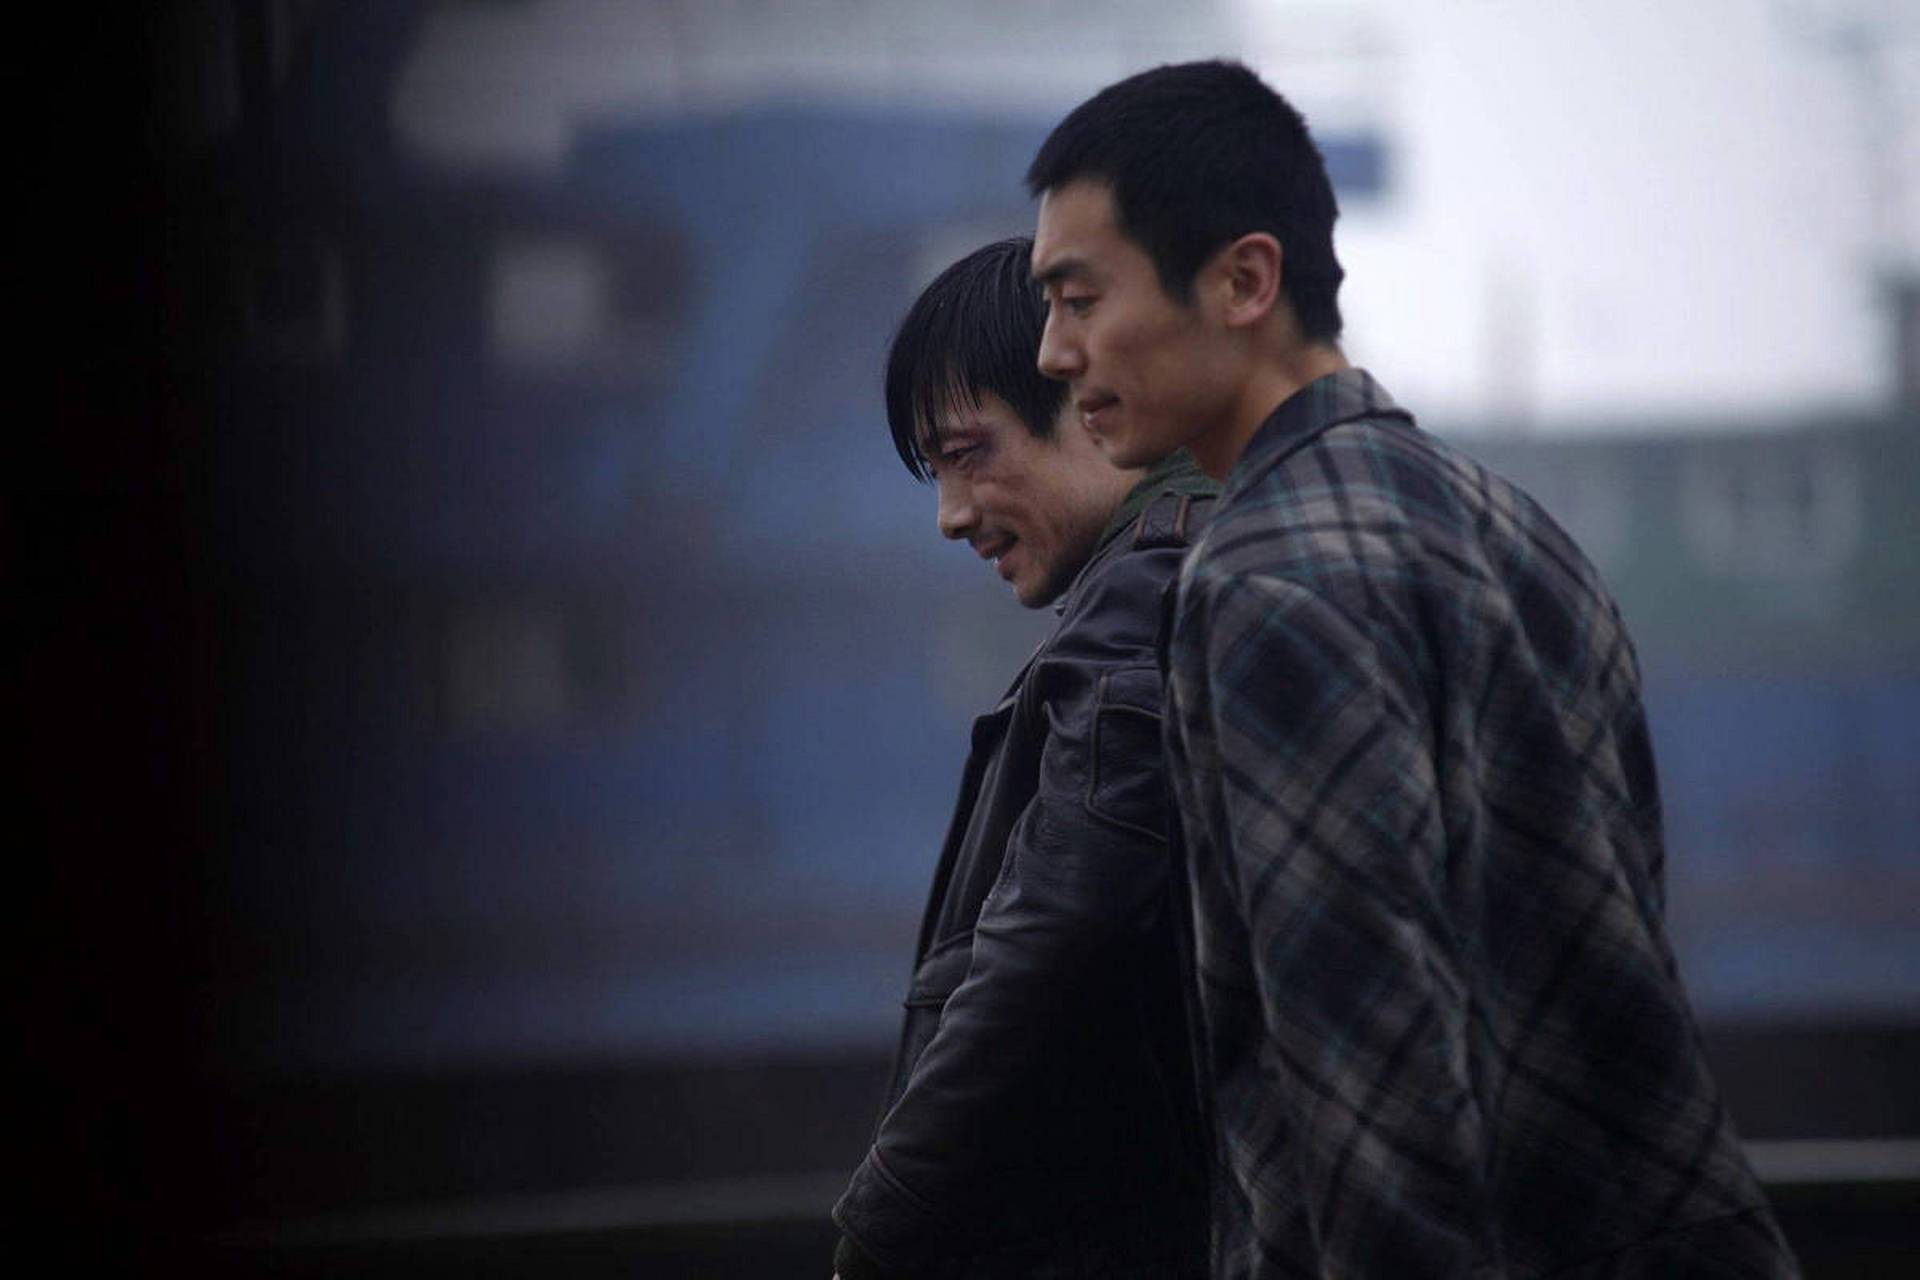 《浮城谜事》是2012年娄烨导演的一部都市悬疑爱情电影,由梅峰编剧